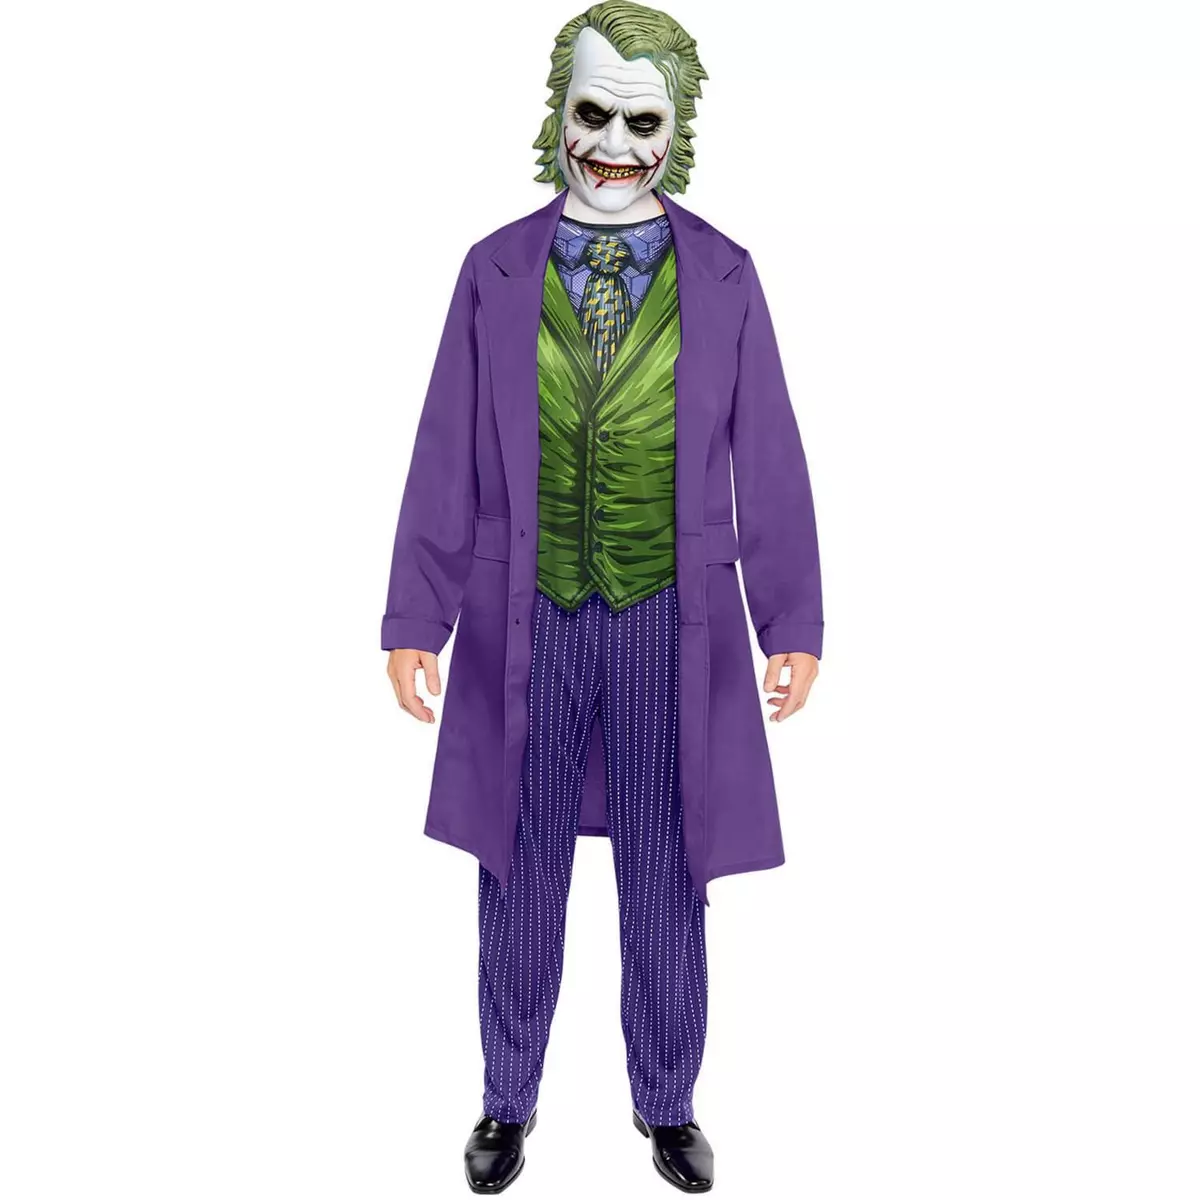  Déguisement Joker le film - Adulte - M